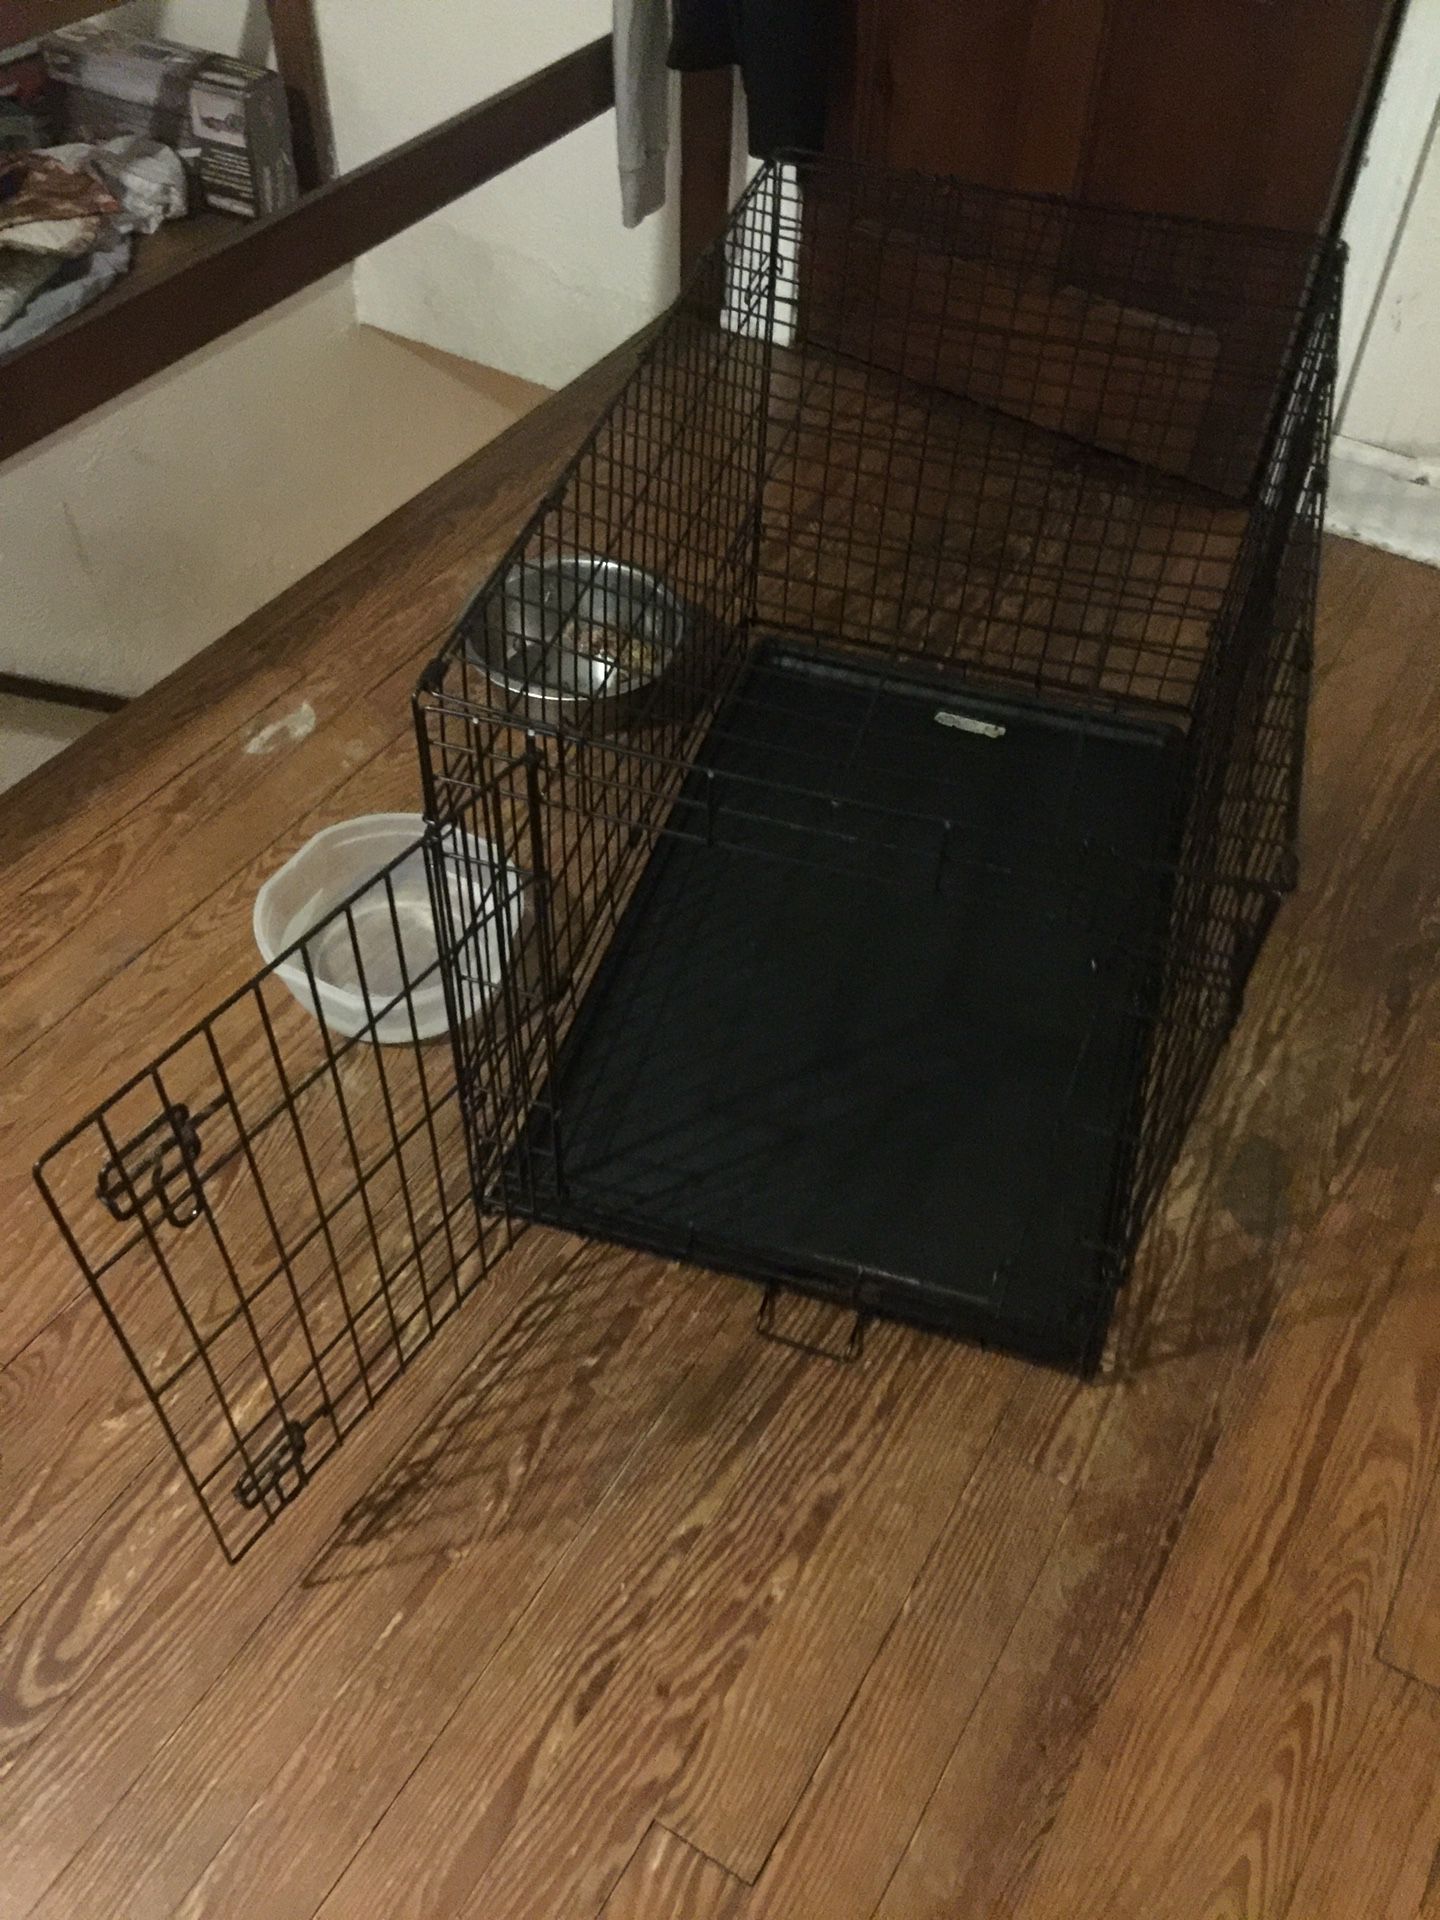 Medium/large dog cage